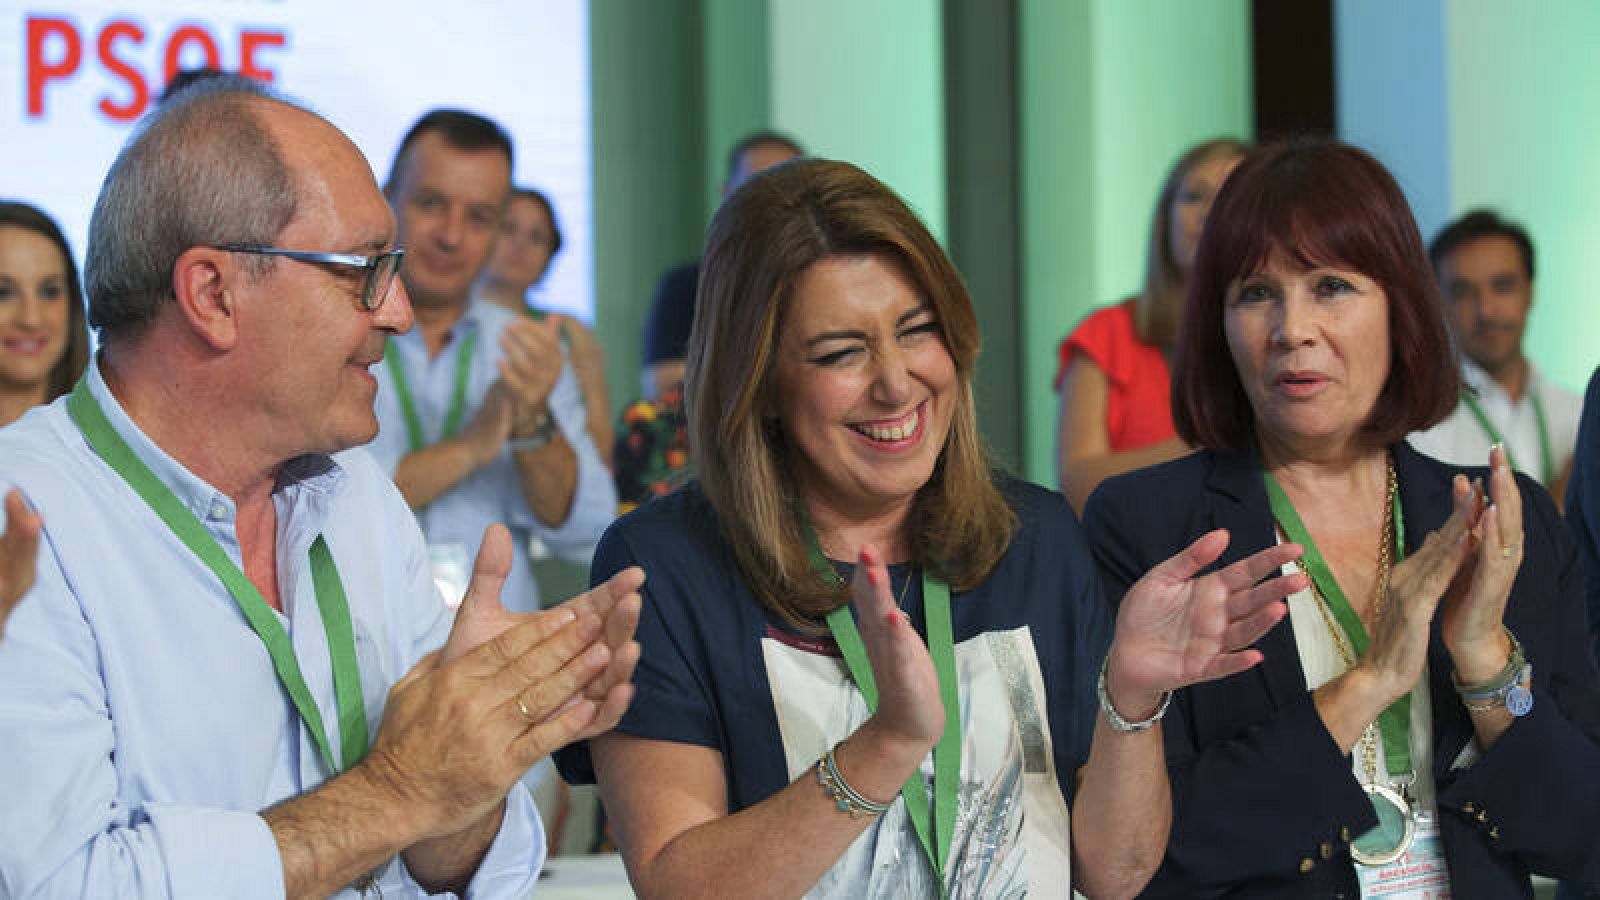 La presidenta andaluza y secretaria general del PSOE-A, Susana Díaz, junto al secretario de organización, Juan Cornejo, y la presidenta de los socialistas andaluces, Micaela Navarro